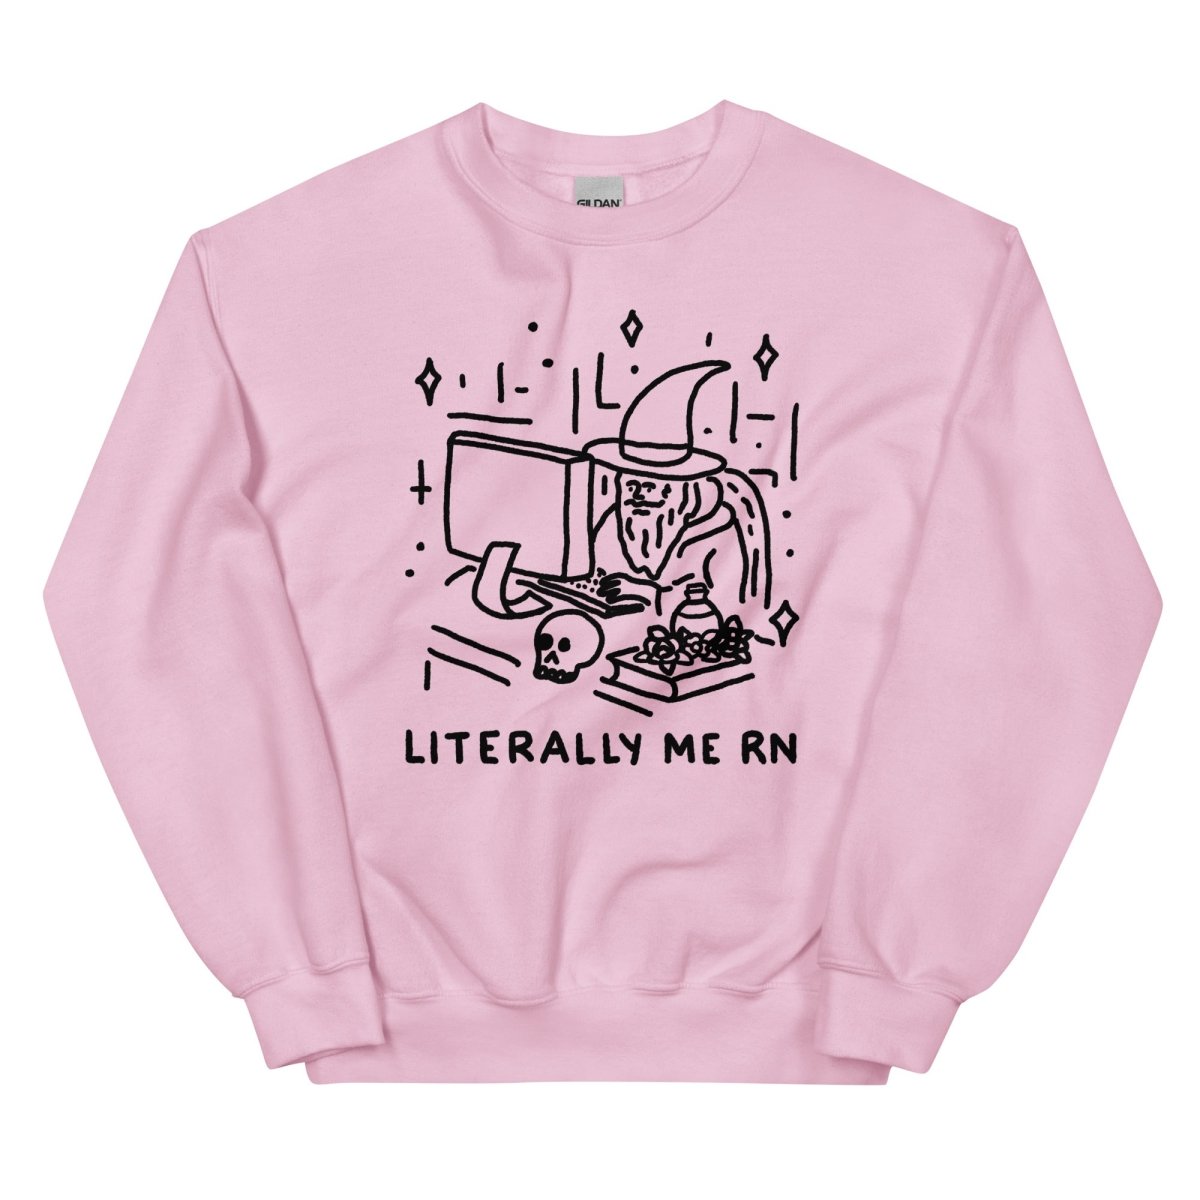 Literally me rn sweatshirt - Pretty Bad Co.